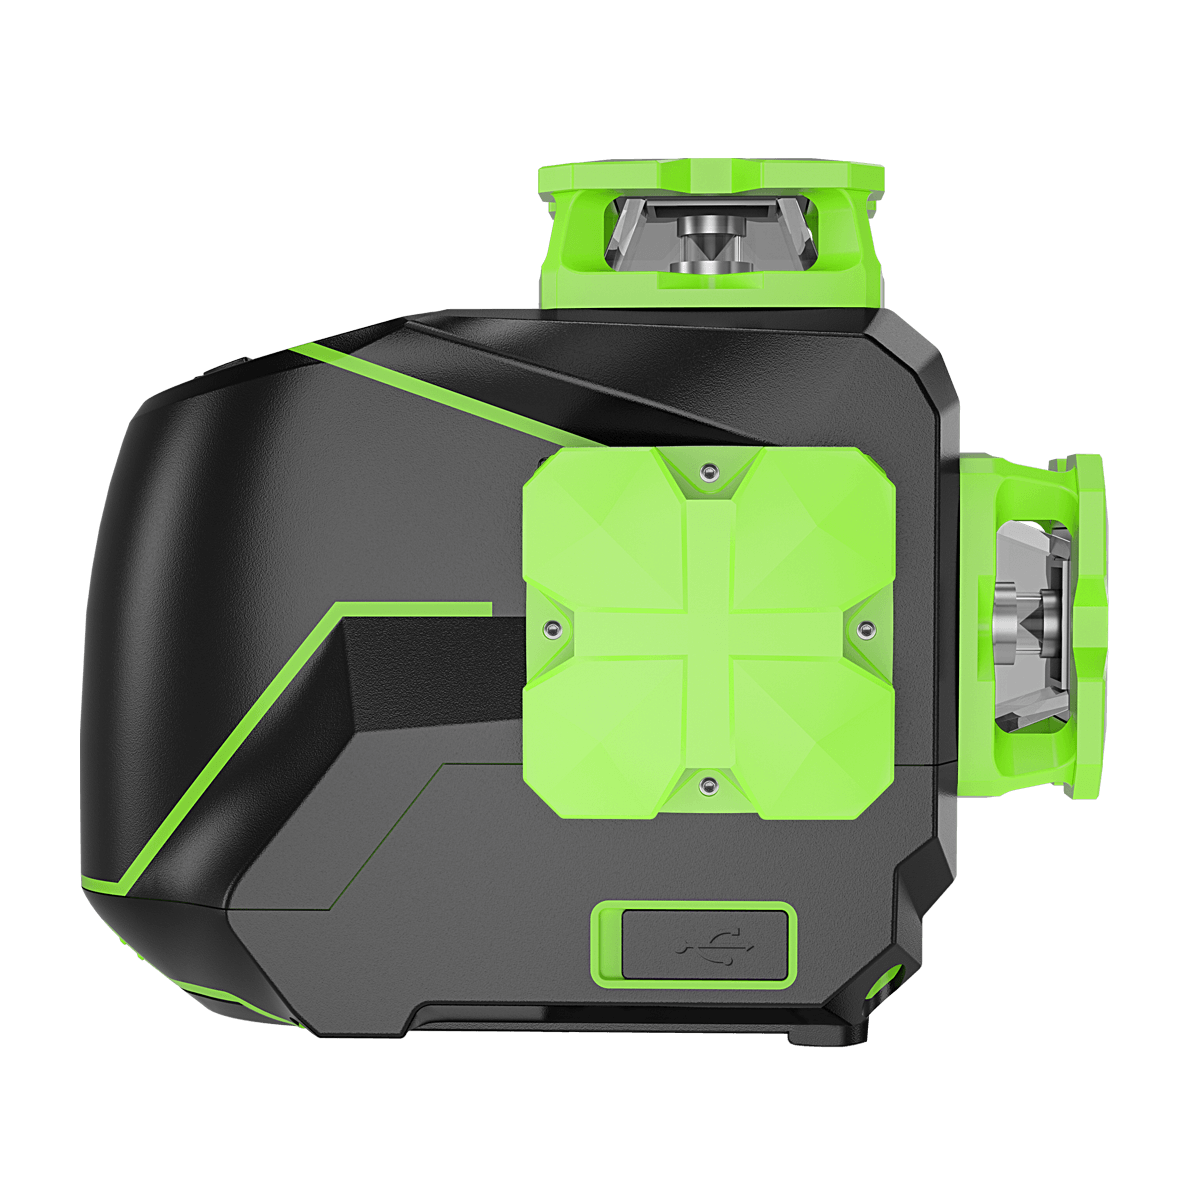  Huepar 3 x 360 - Nivelador láser 3D con conectividad Bluetooth,  tres planos de autonivelación y alineación de línea cruzada, nivel láser  360°, horizontal y vertical, con estuche rígido 603CG-BT 